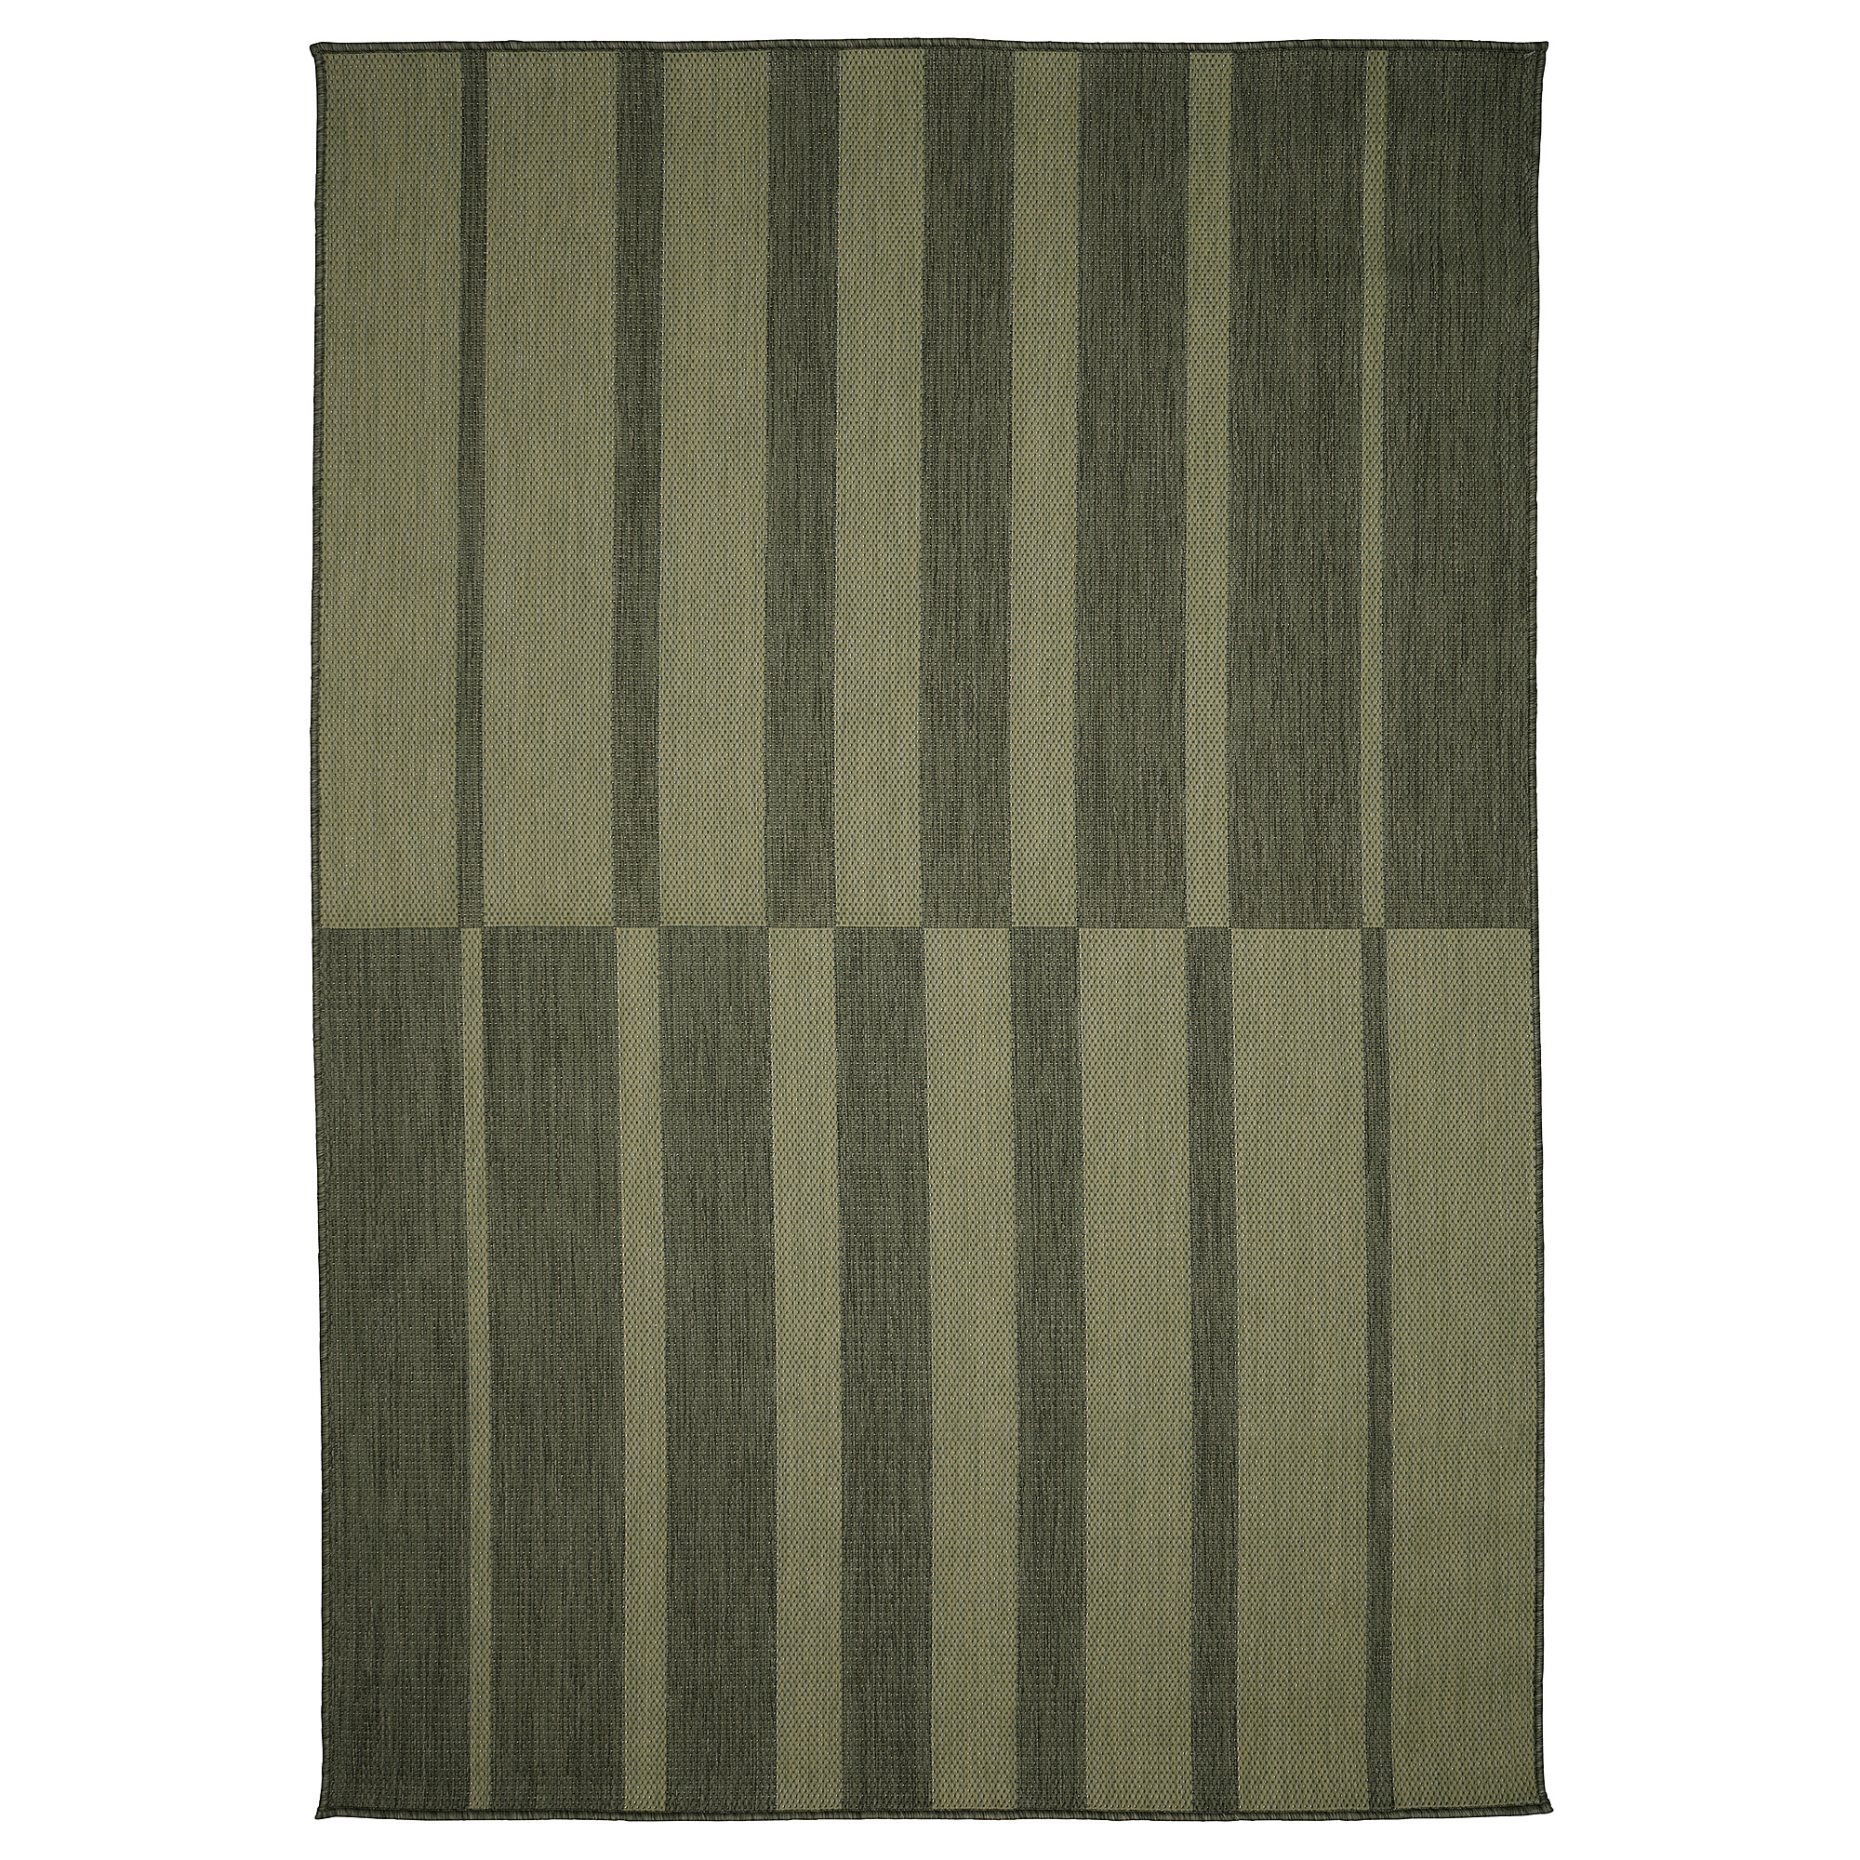 KANTSTOLPE, килим гладко тъкан, на откр/закрито, 105.693.22